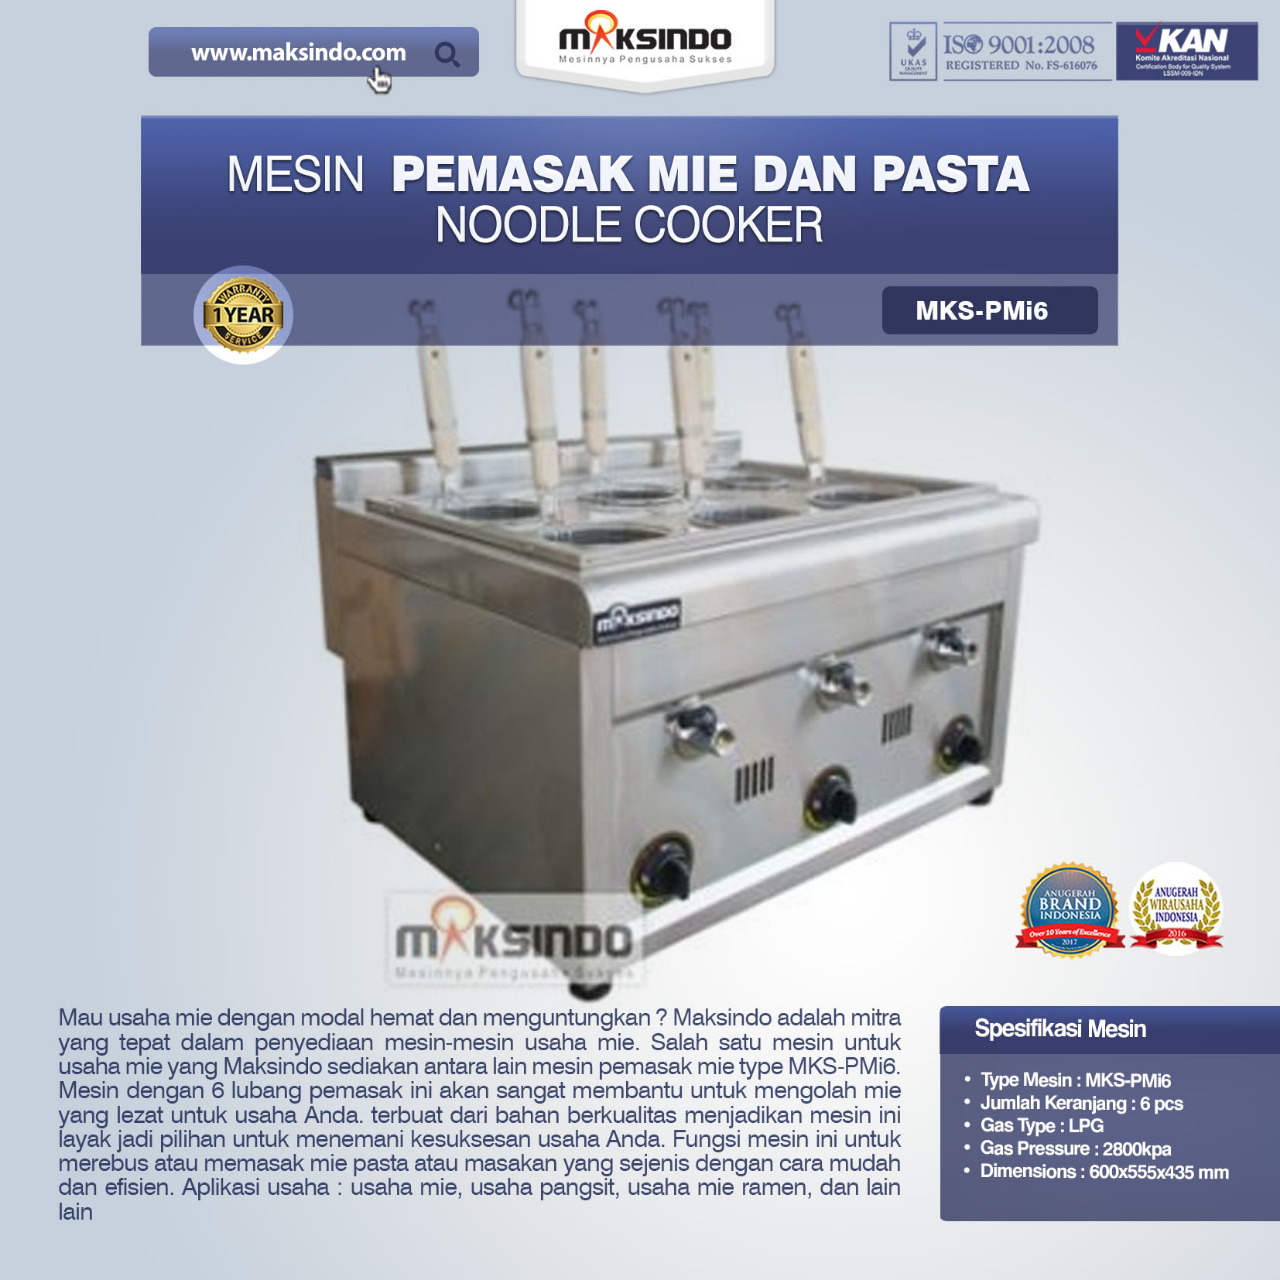 Jual Noodle Cooker (Pemasak Mie Dan Pasta) MKS-PMI6 di Palembang